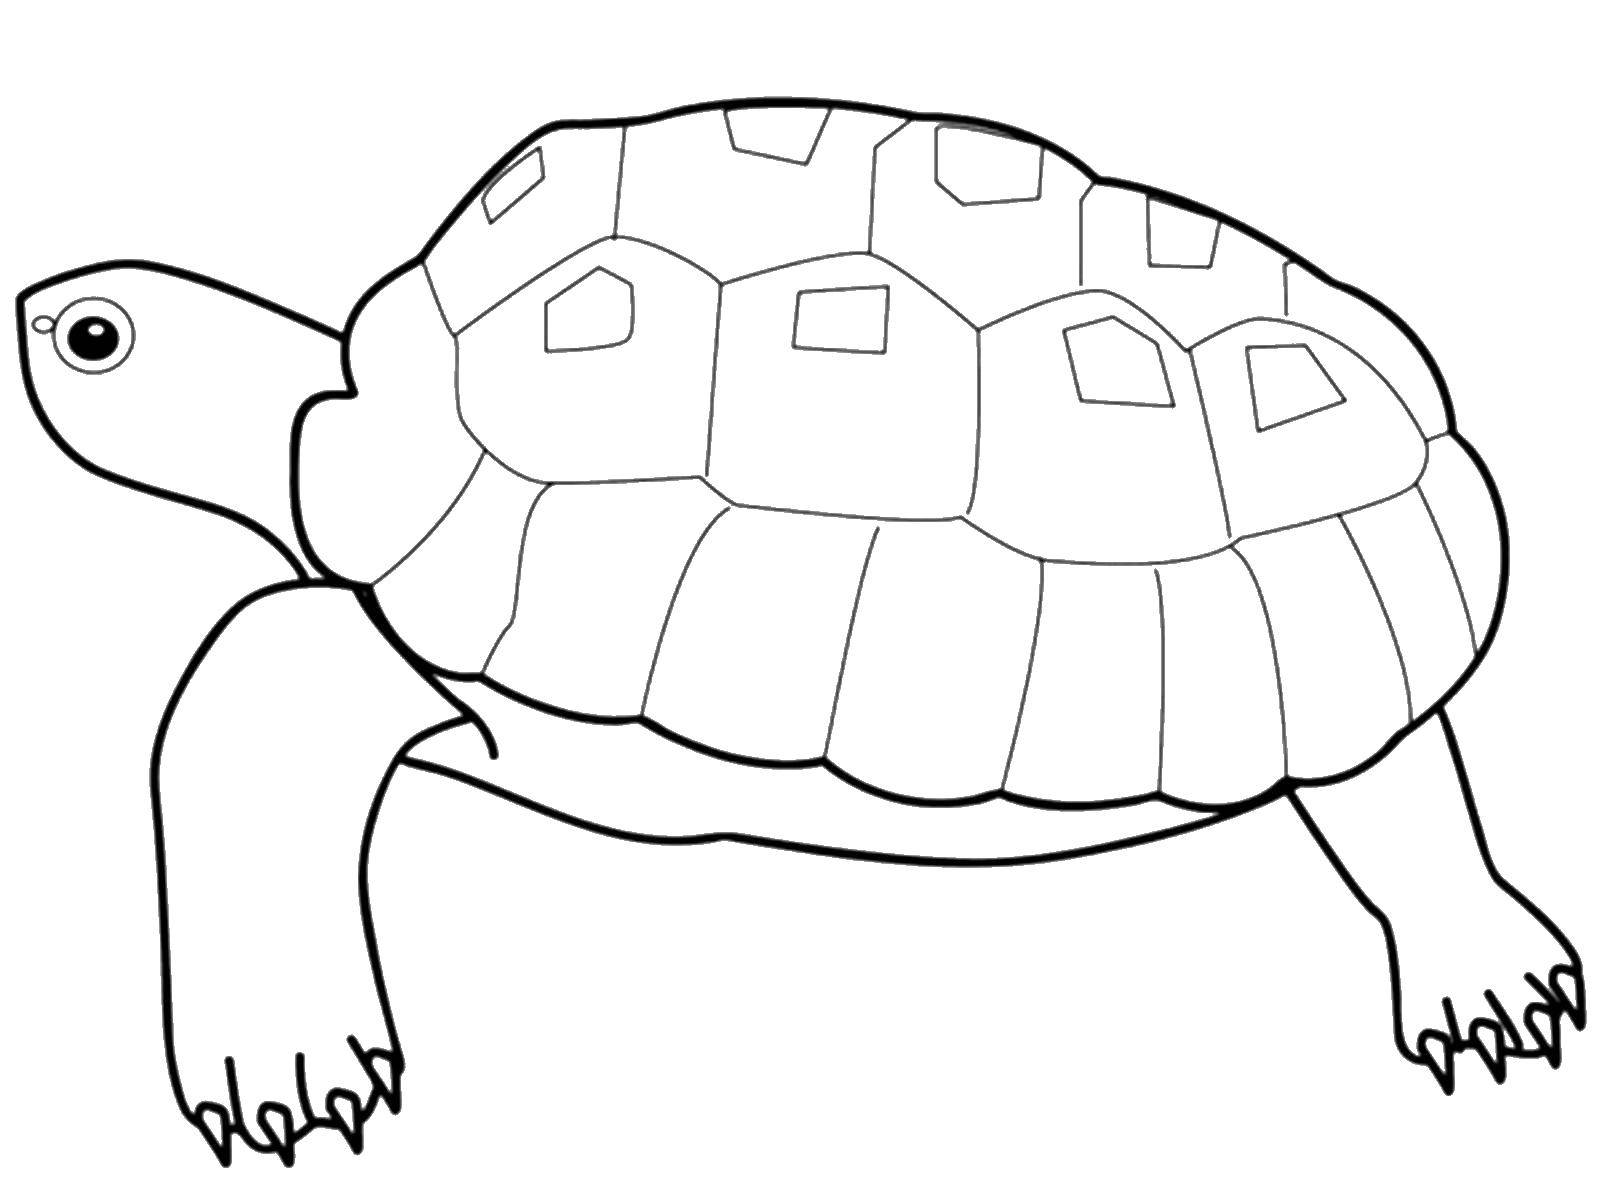   Большая черепаха